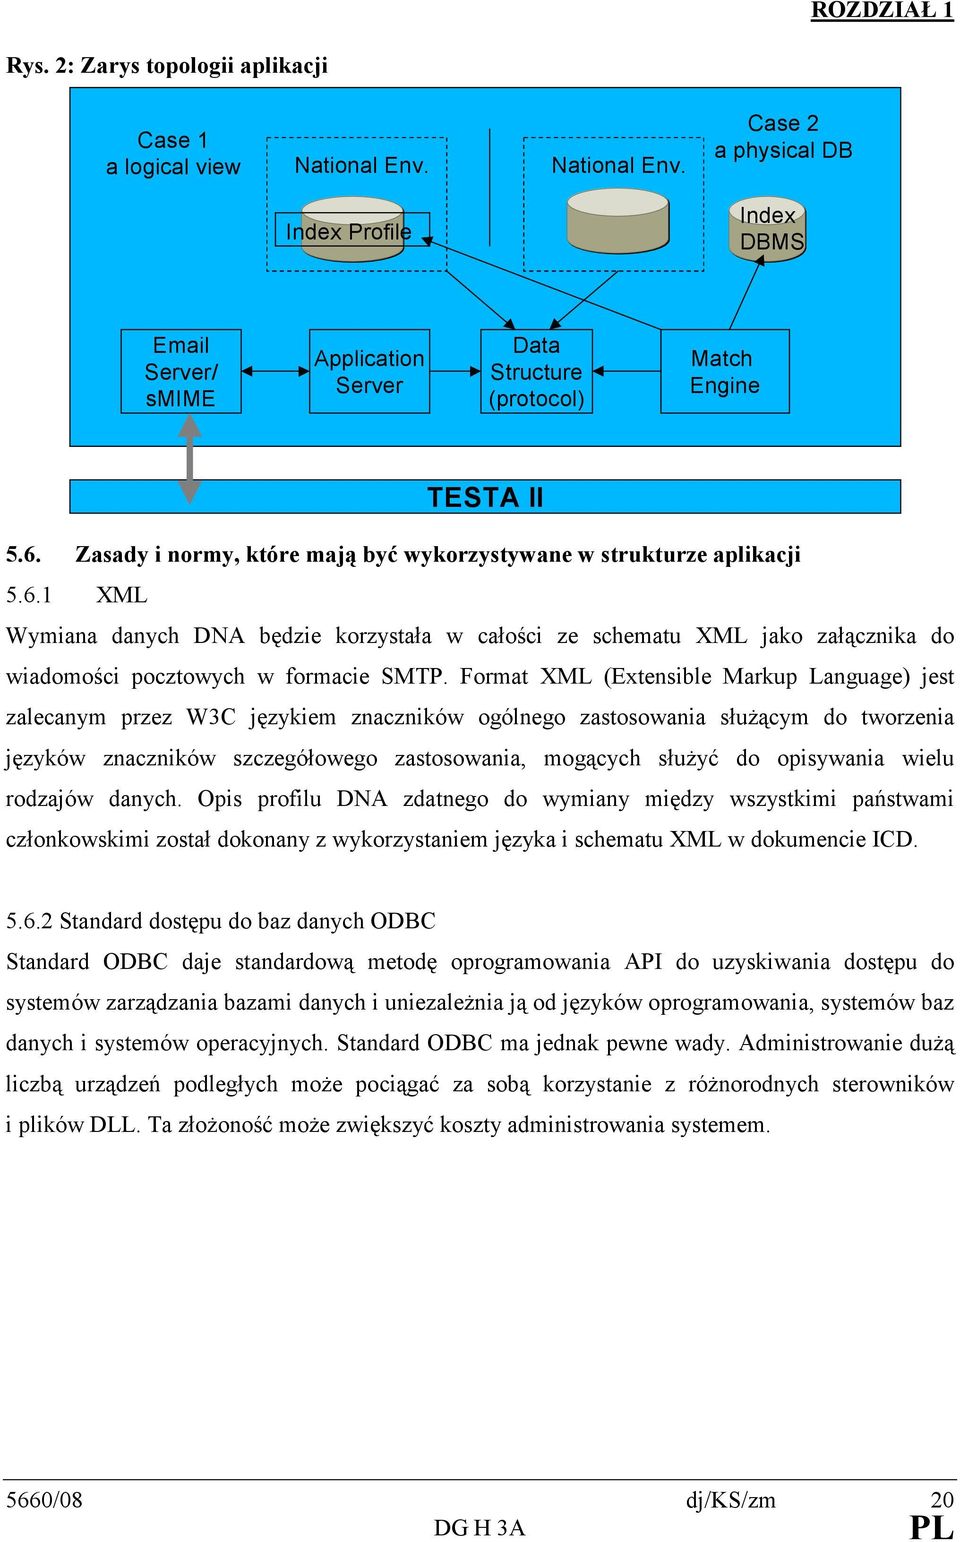 Zasady i normy, które mają być wykorzystywane w strukturze aplikacji 5.6.1 XML Wymiana danych DNA będzie korzystała w całości ze schematu XML jako załącznika do wiadomości pocztowych w formacie SMTP.